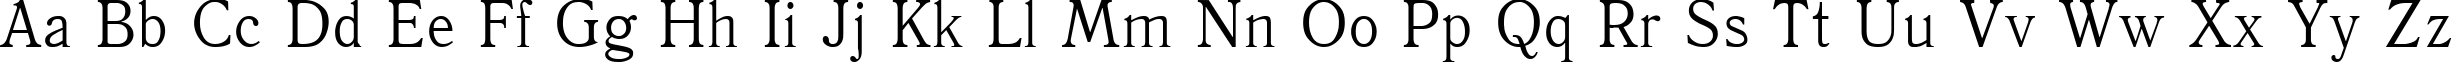 Пример написания английского алфавита шрифтом Antiqua95